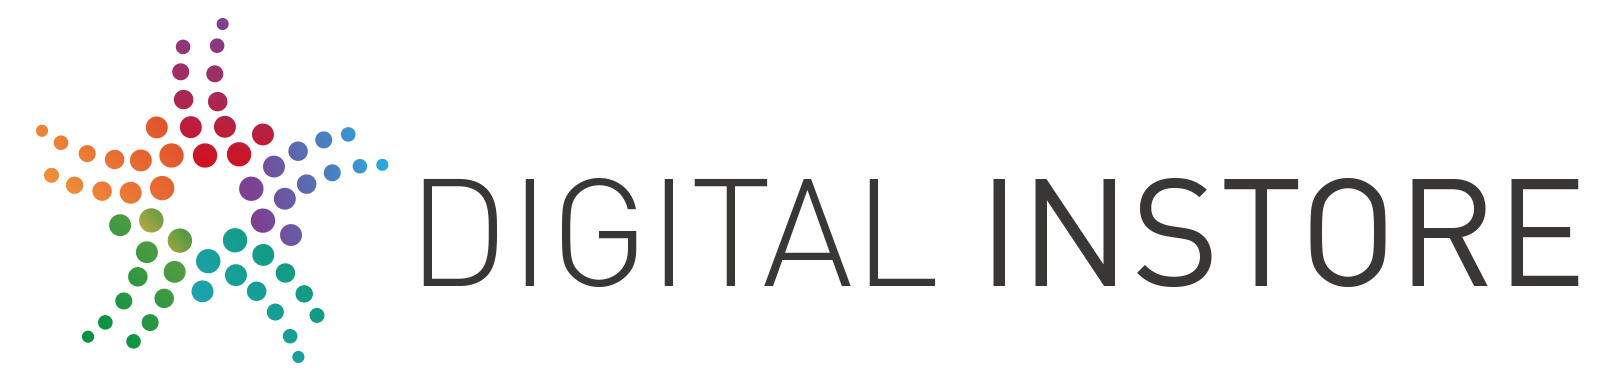 Digital instore